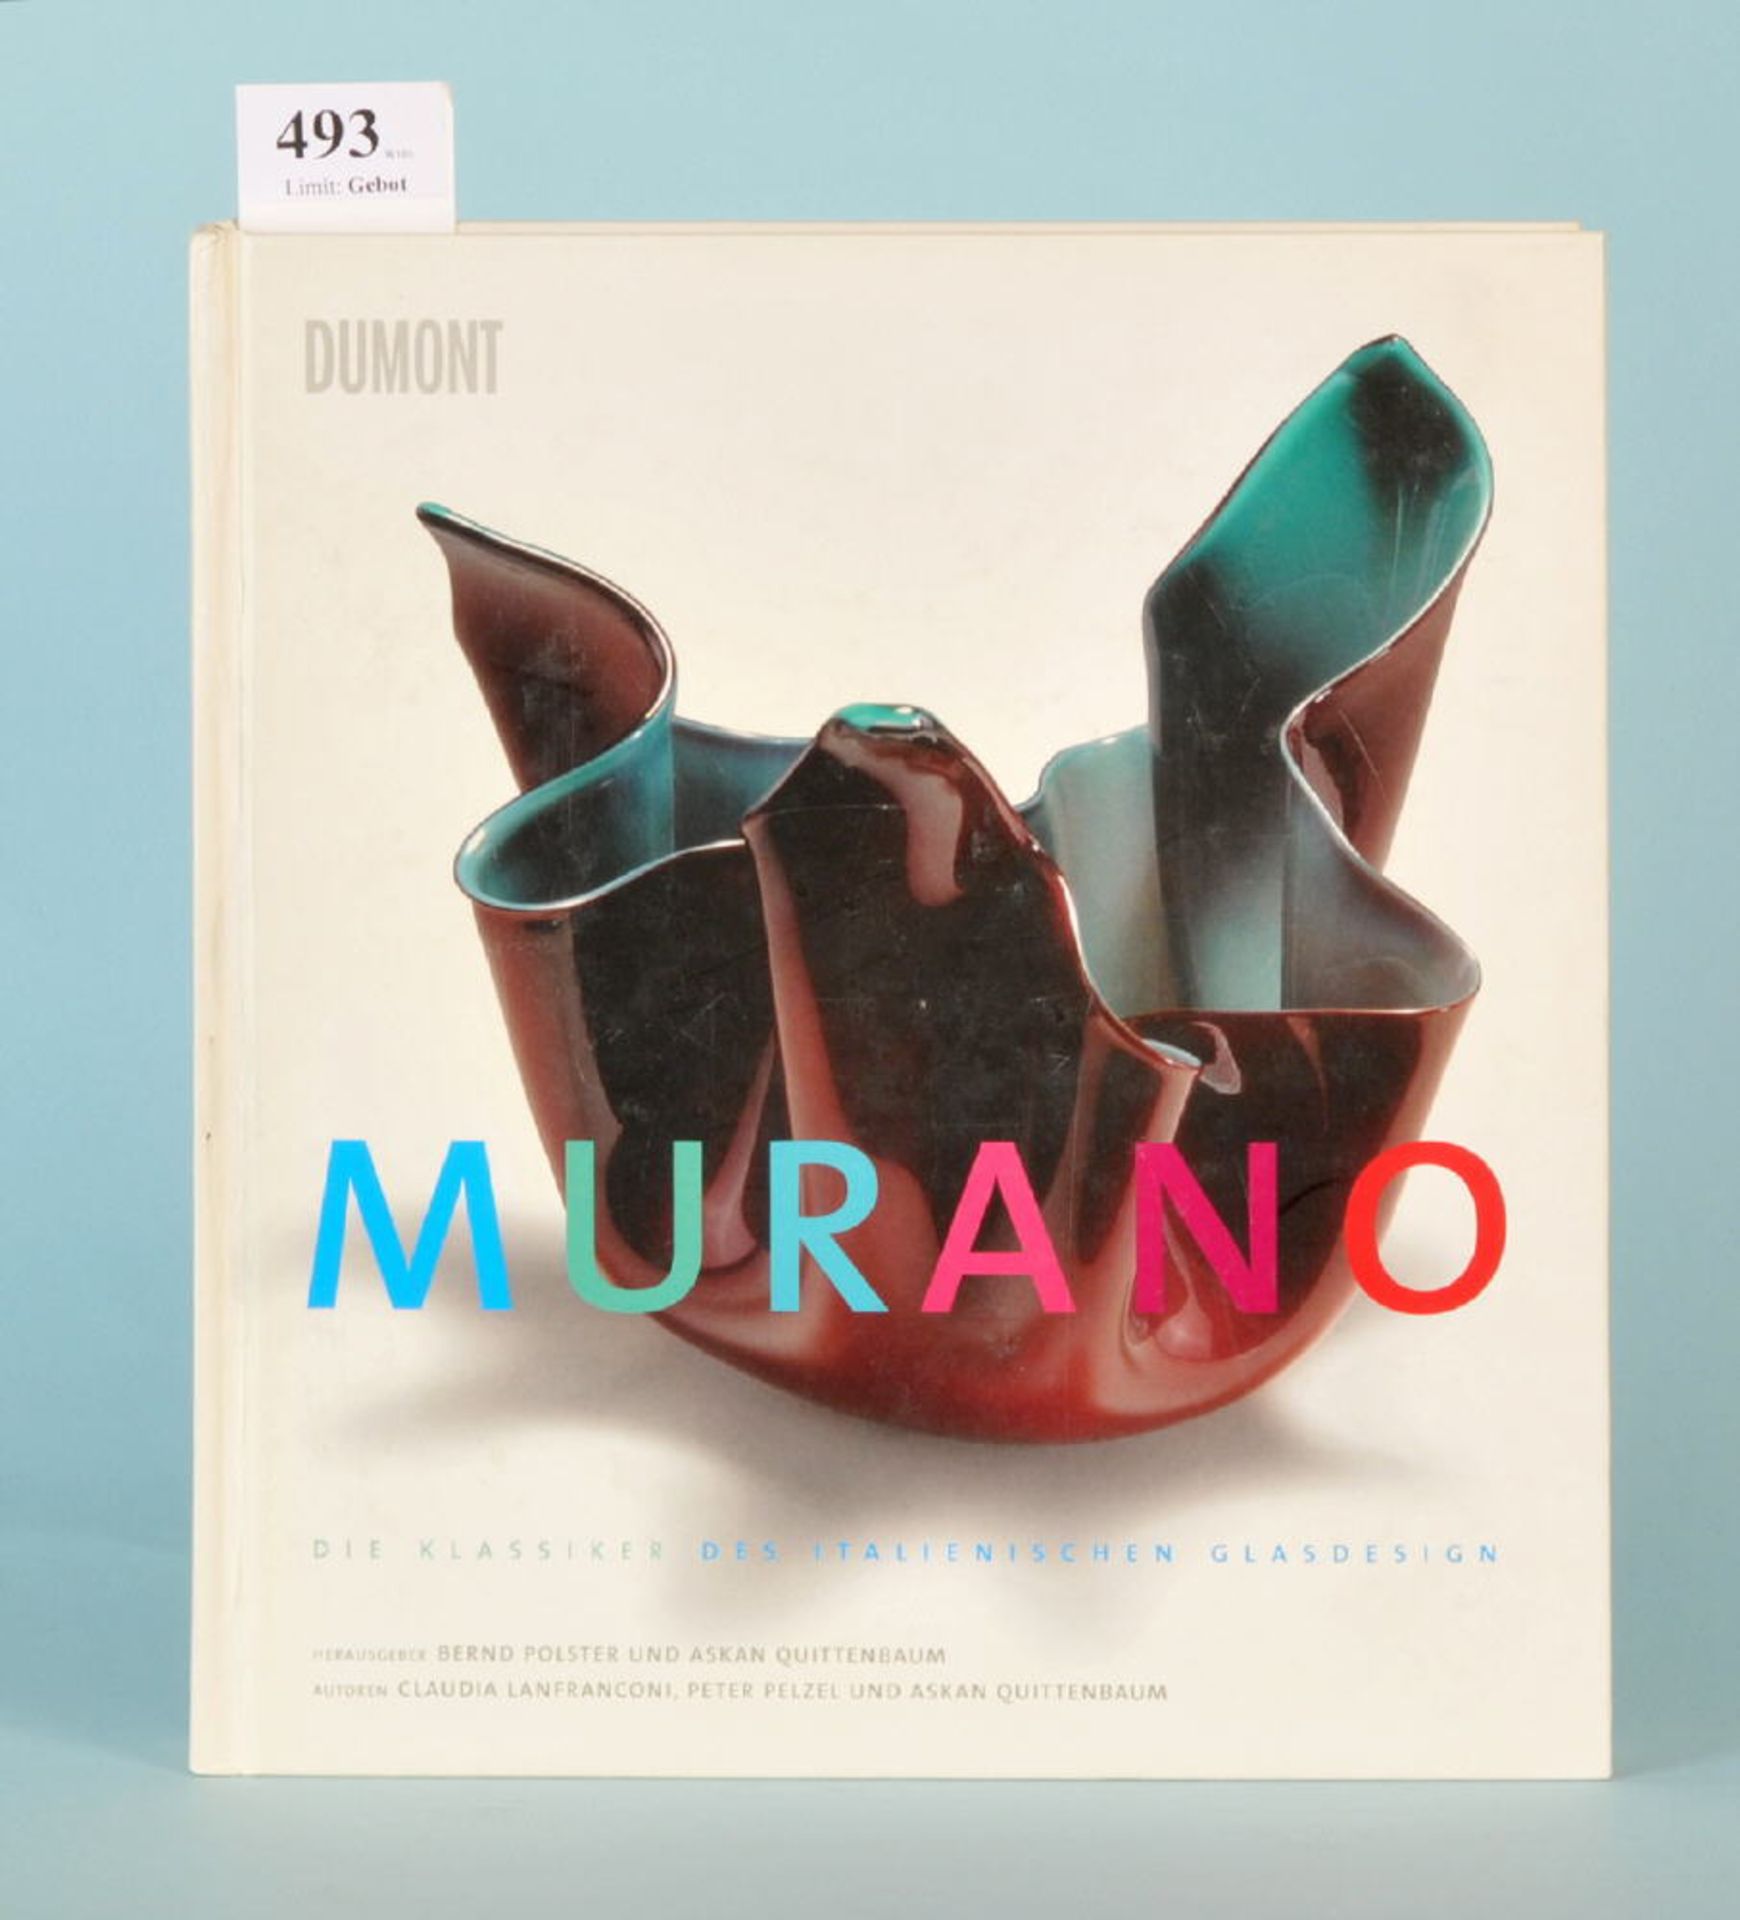 Polster, B. u. Quittenbaum, A. "Murano - Die Klassiker des...""...italienischen Glasdesigns",